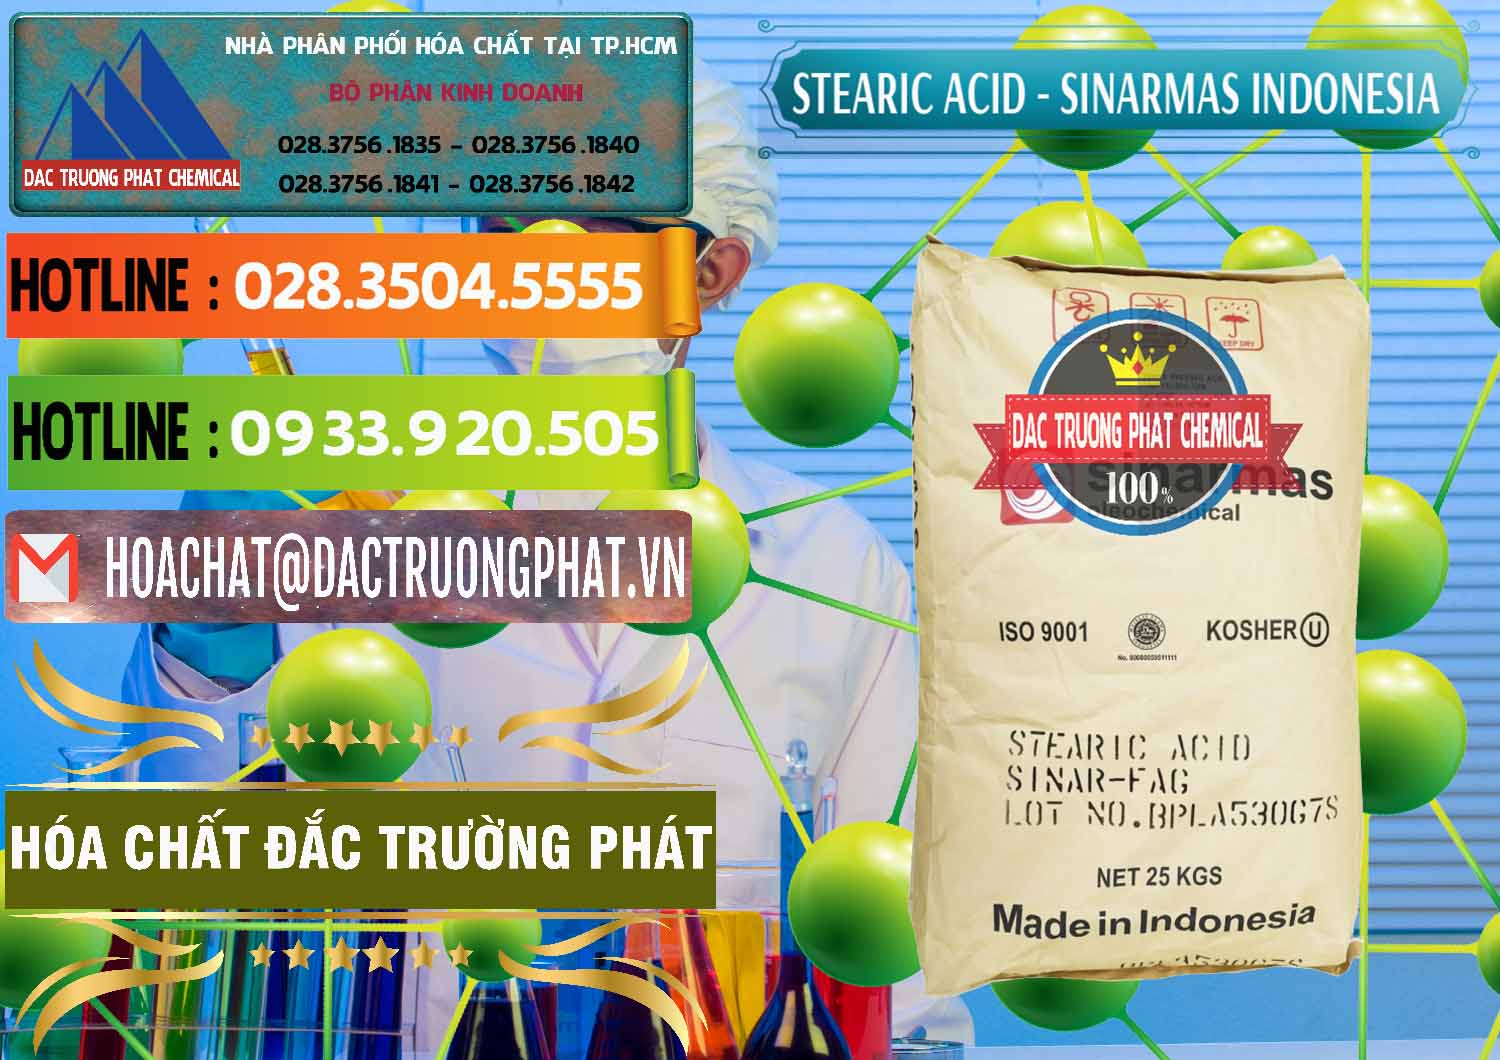 Đơn vị chuyên bán - phân phối Axit Stearic - Stearic Acid Sinarmas Indonesia - 0389 - Cty chuyên bán _ cung cấp hóa chất tại TP.HCM - cungcaphoachat.com.vn